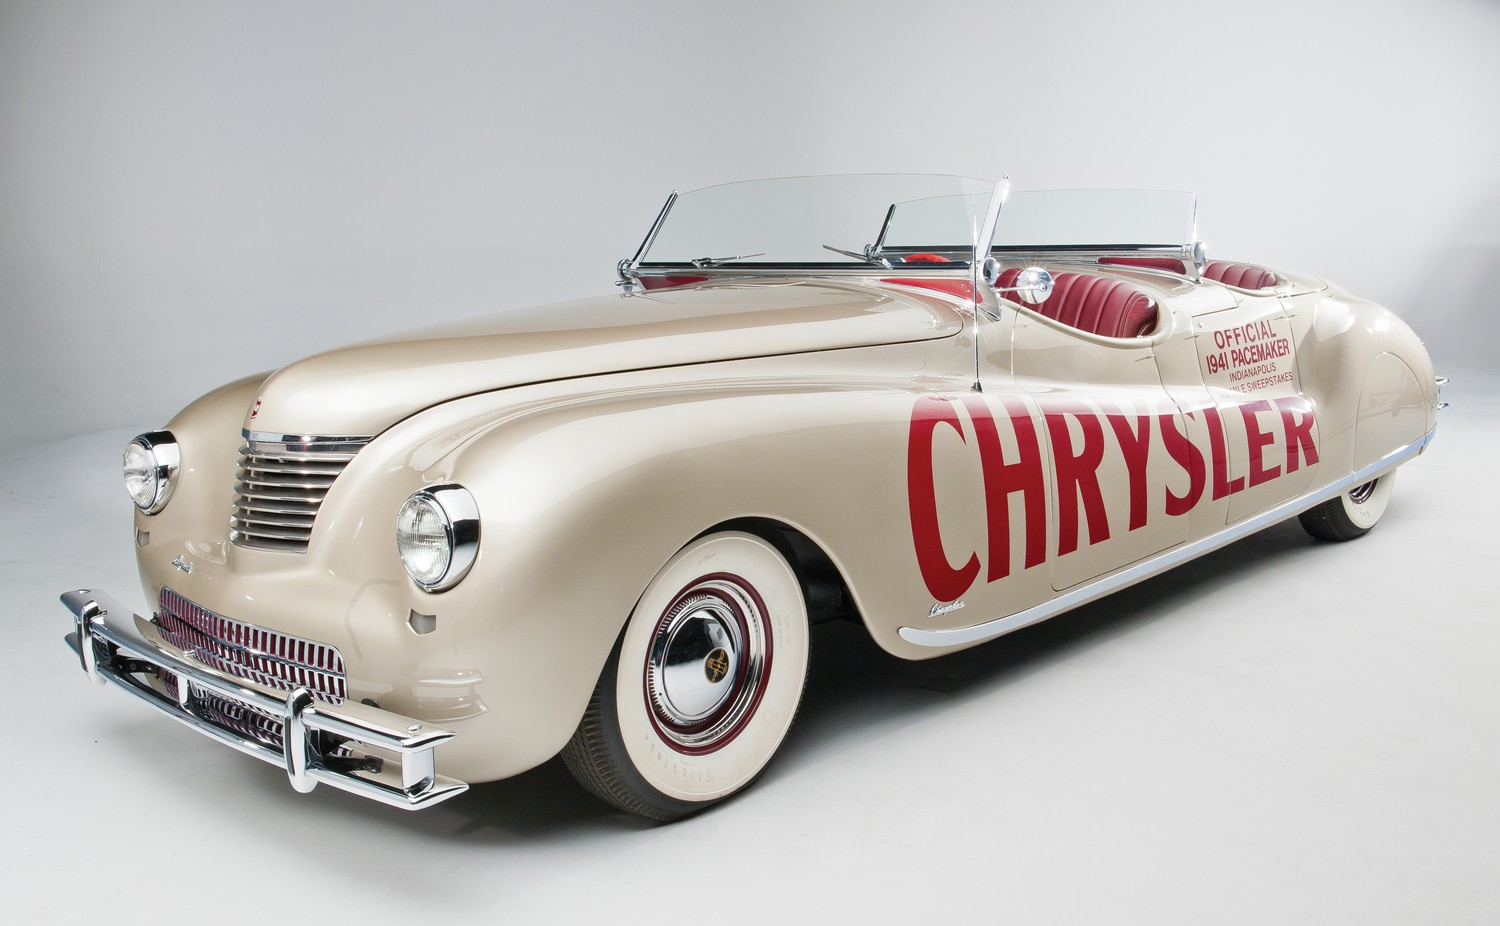 W retro. Chrysler Thunderbolt 1941. Chrysler Phaeton. Крайслер Ньюпорт 1941. Chrysler Imperial Parade Phaeton.